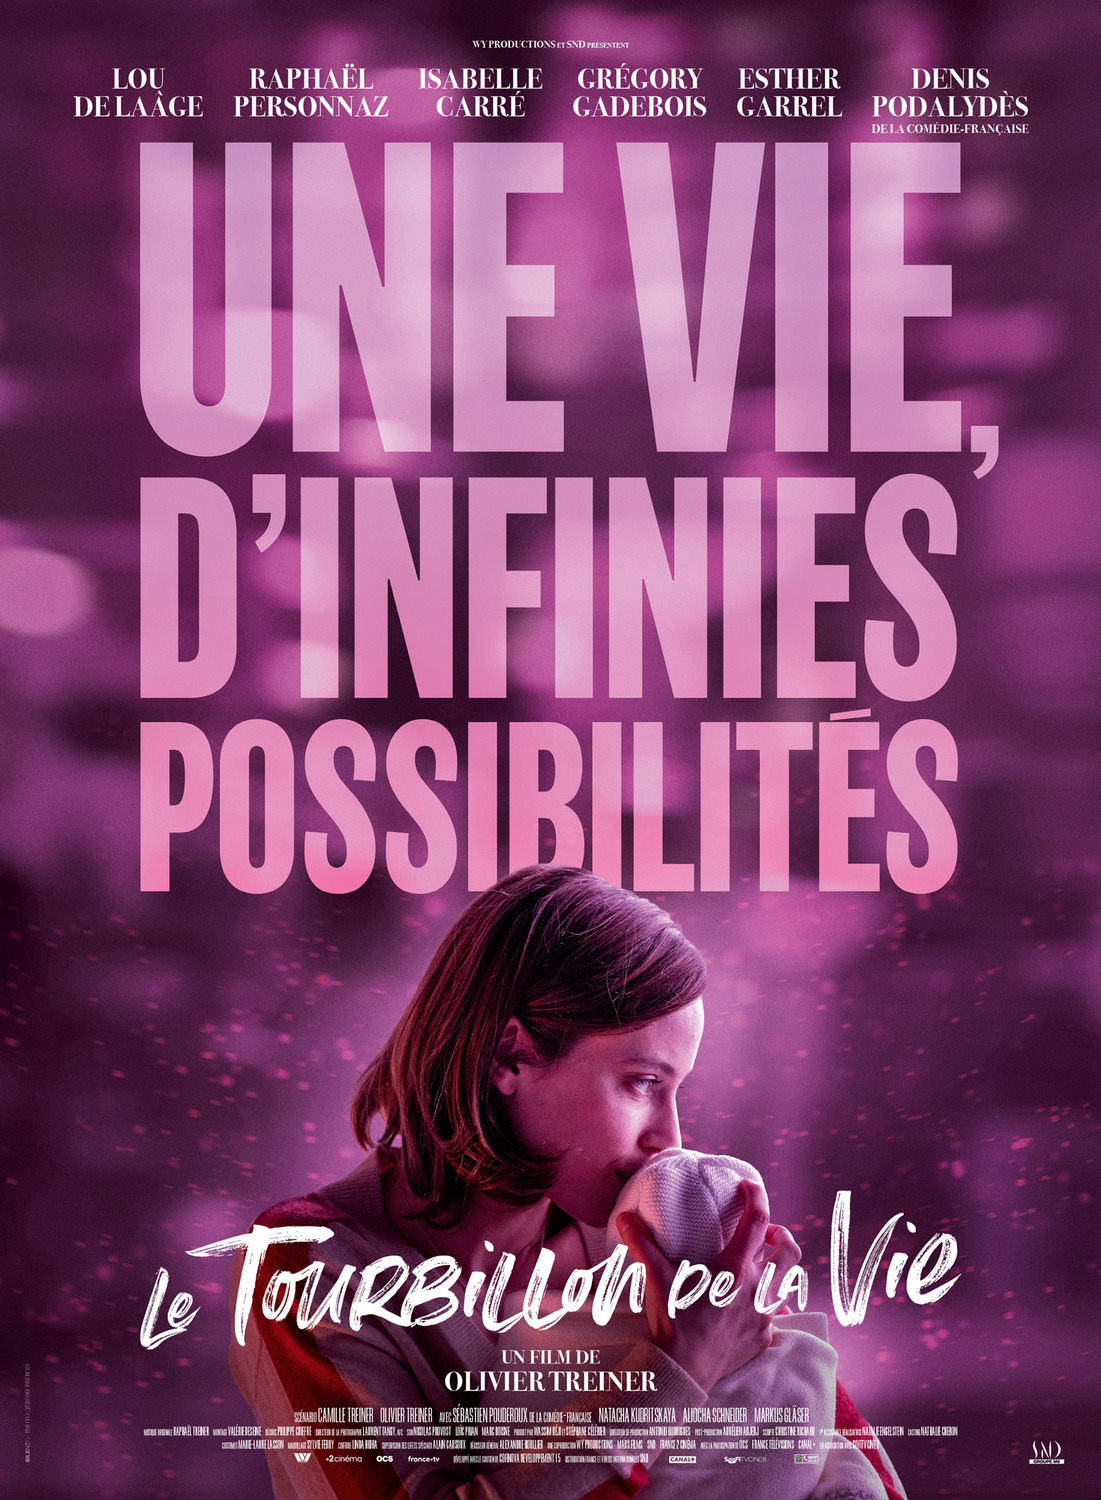 Extra Large Movie Poster Image for Le tourbillon de la vie (#4 of 5)